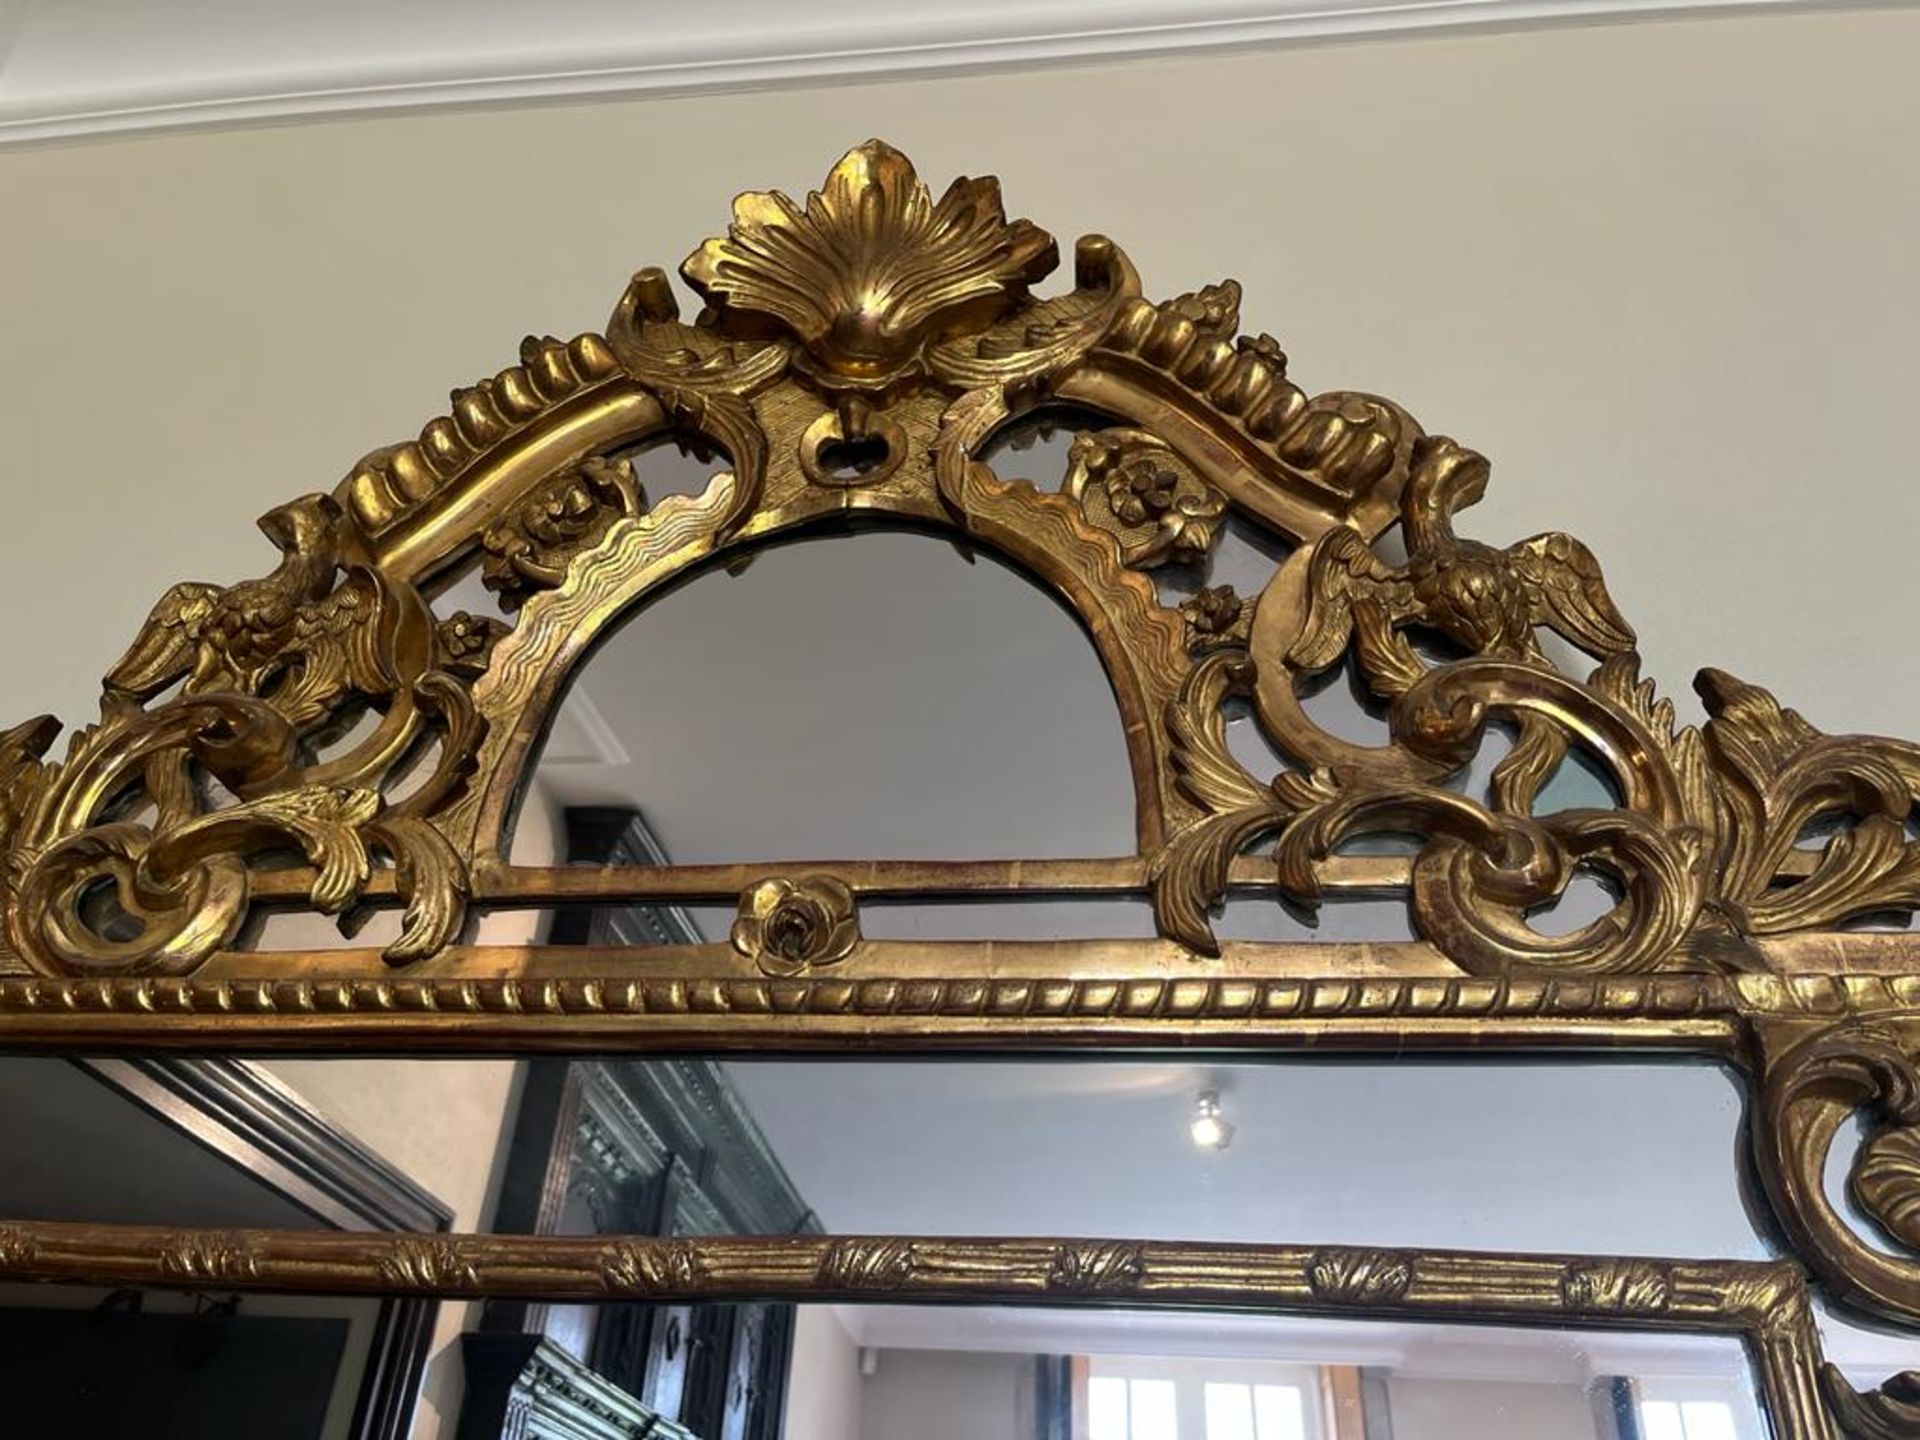 Grand miroir en bois doré à parcloses et fronton Décor d'aigles, de rinceaux feuillagés et fleuris - Bild 4 aus 4